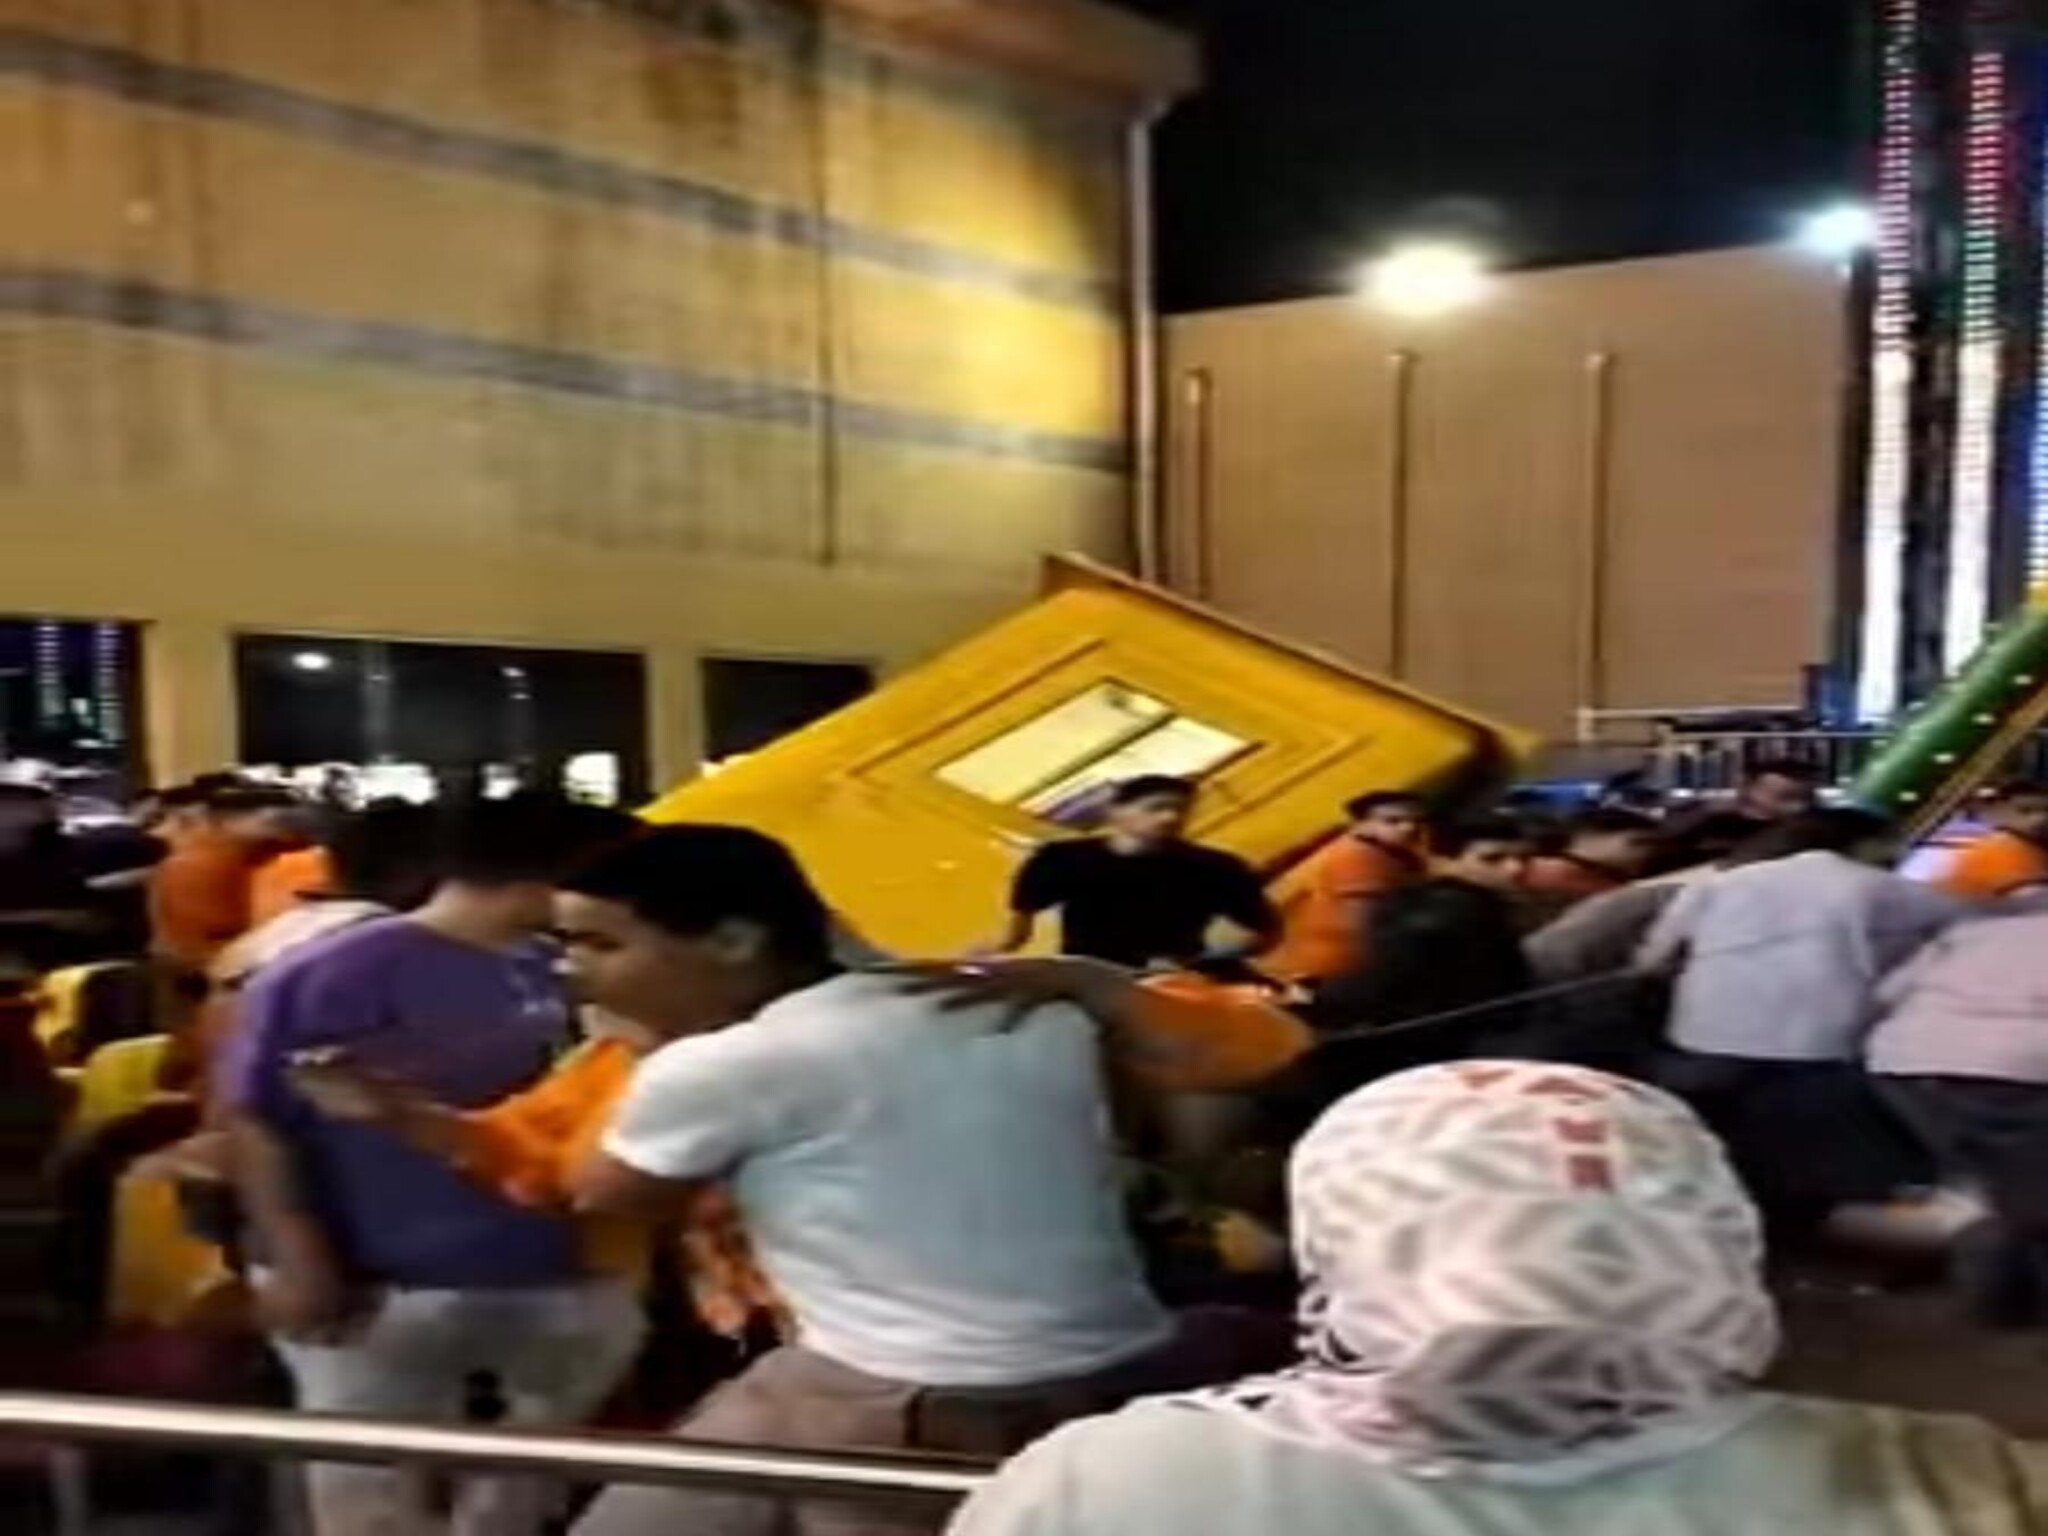 سقوط لعبة فى ملاهي جرين بلازا بالإسكندرية وأنباء عن وقوع إصابات 